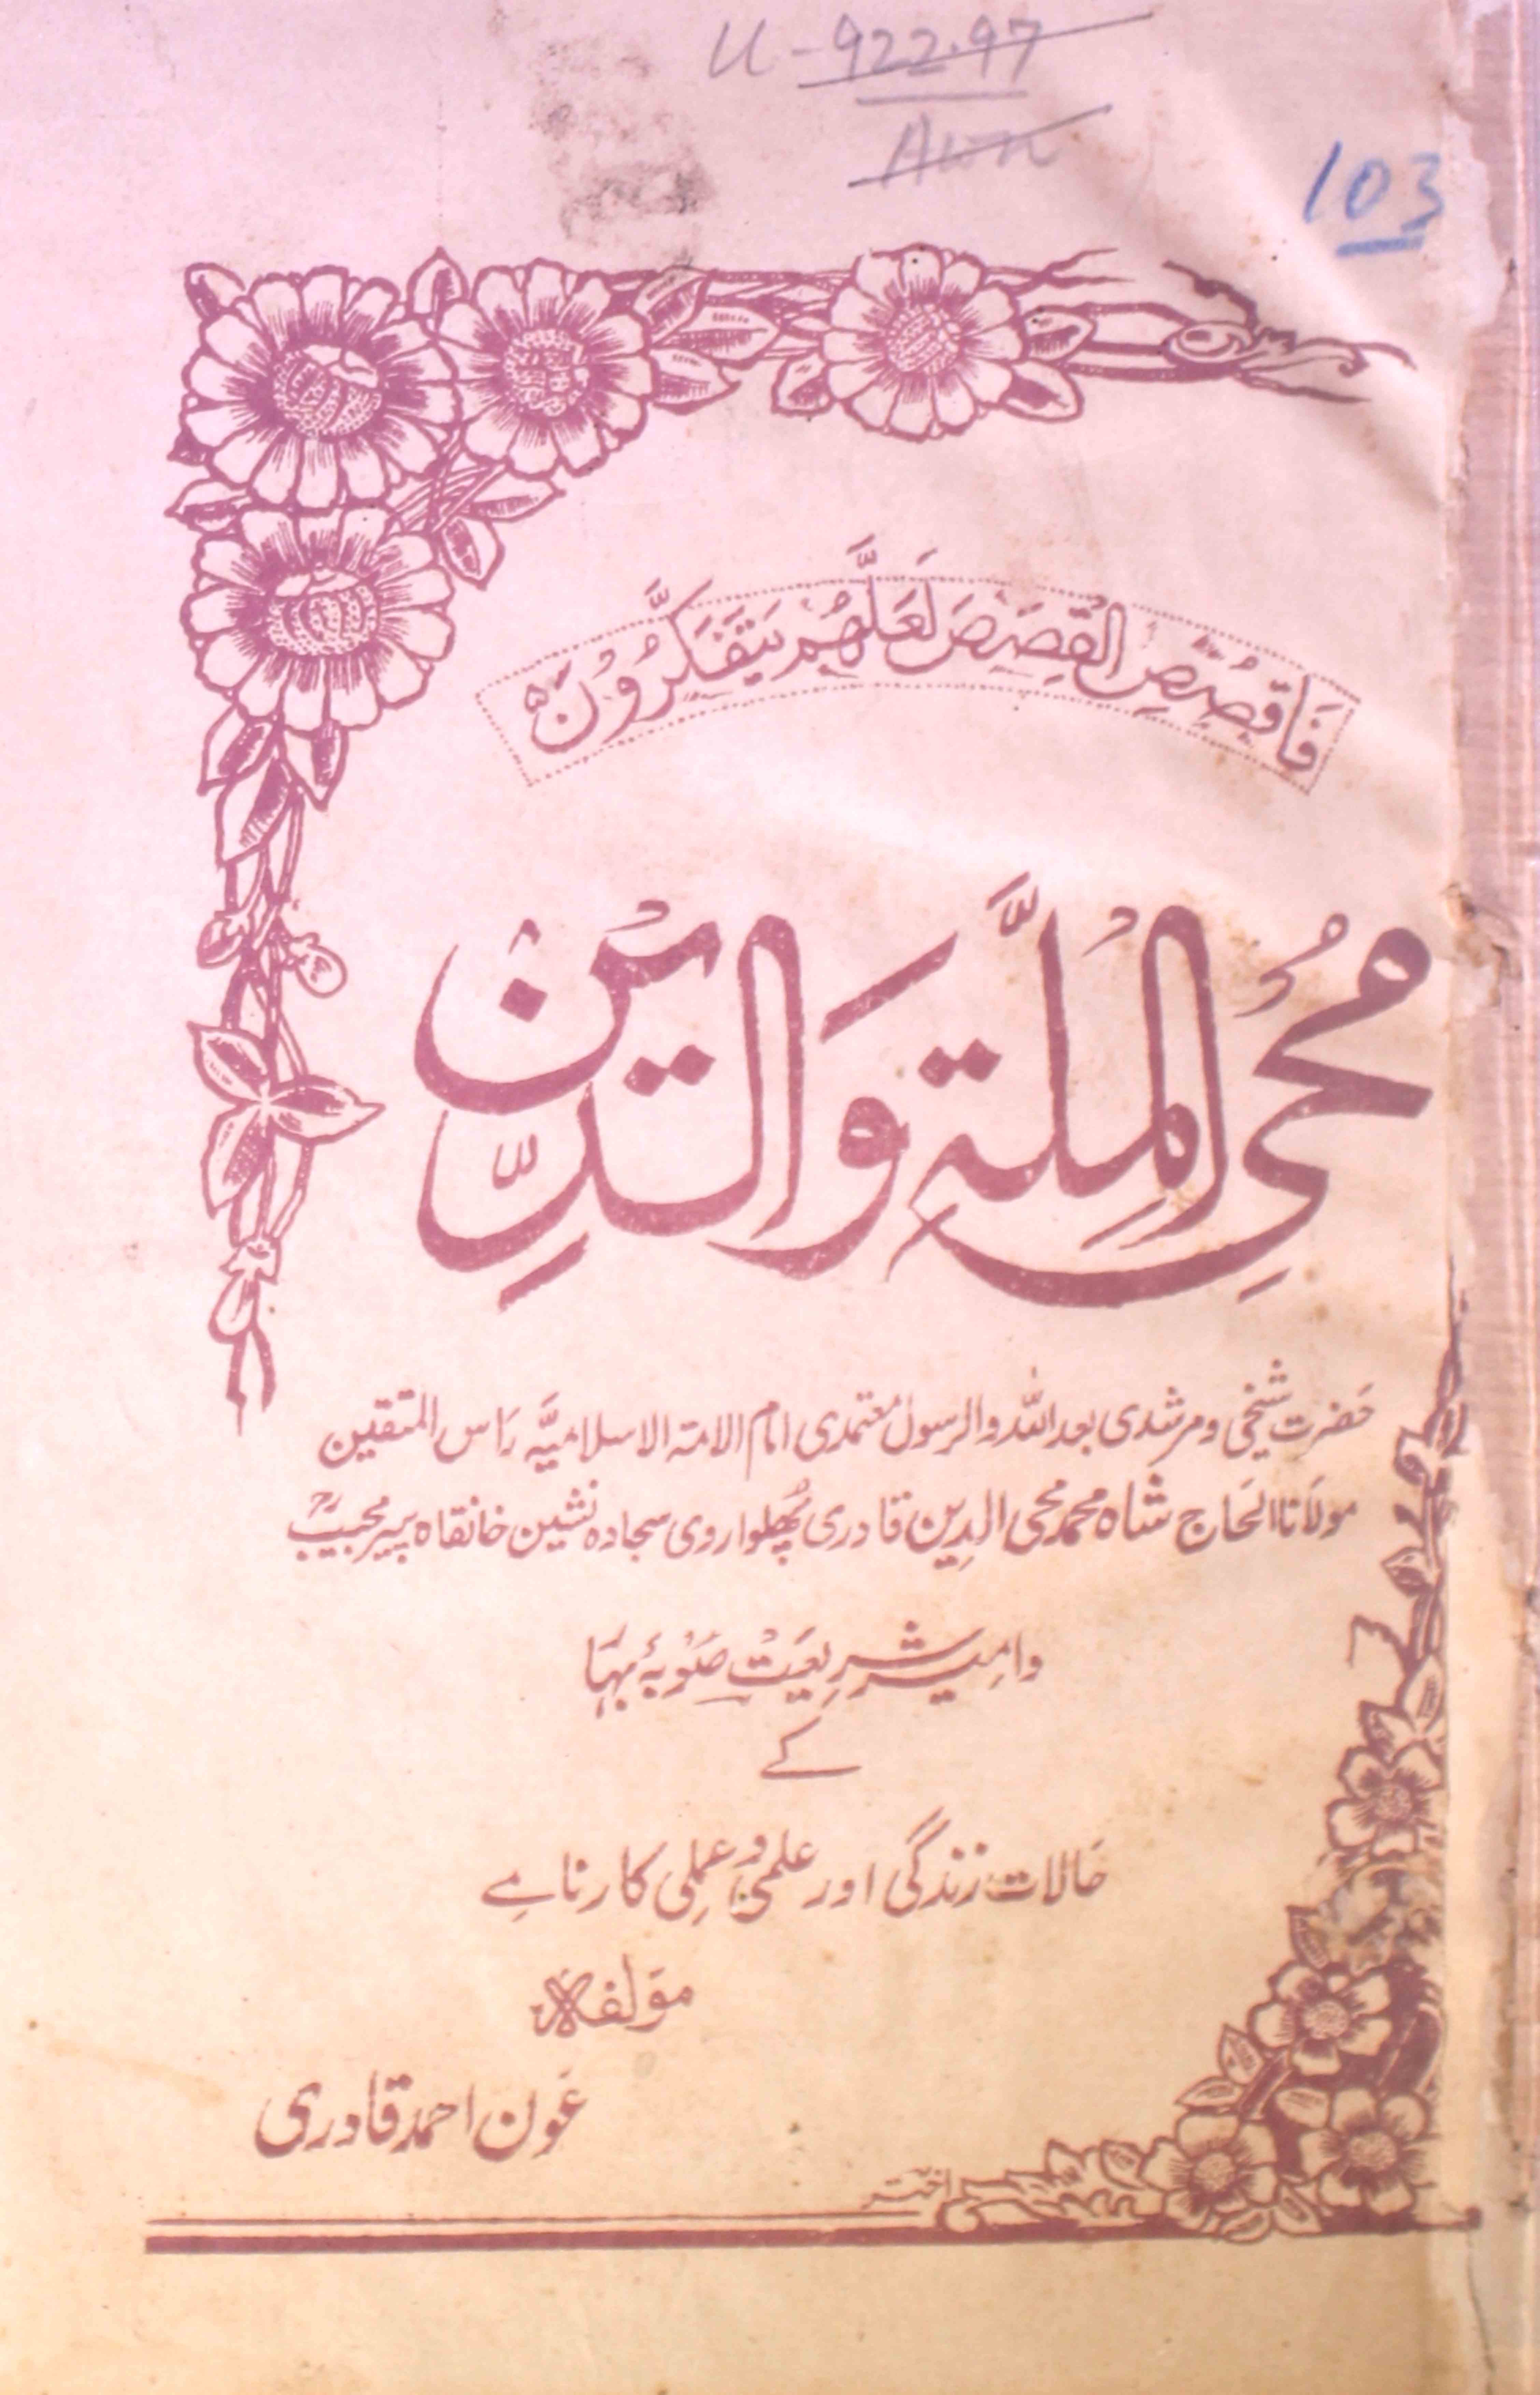 Mohye Al-Millati Wad-Deen